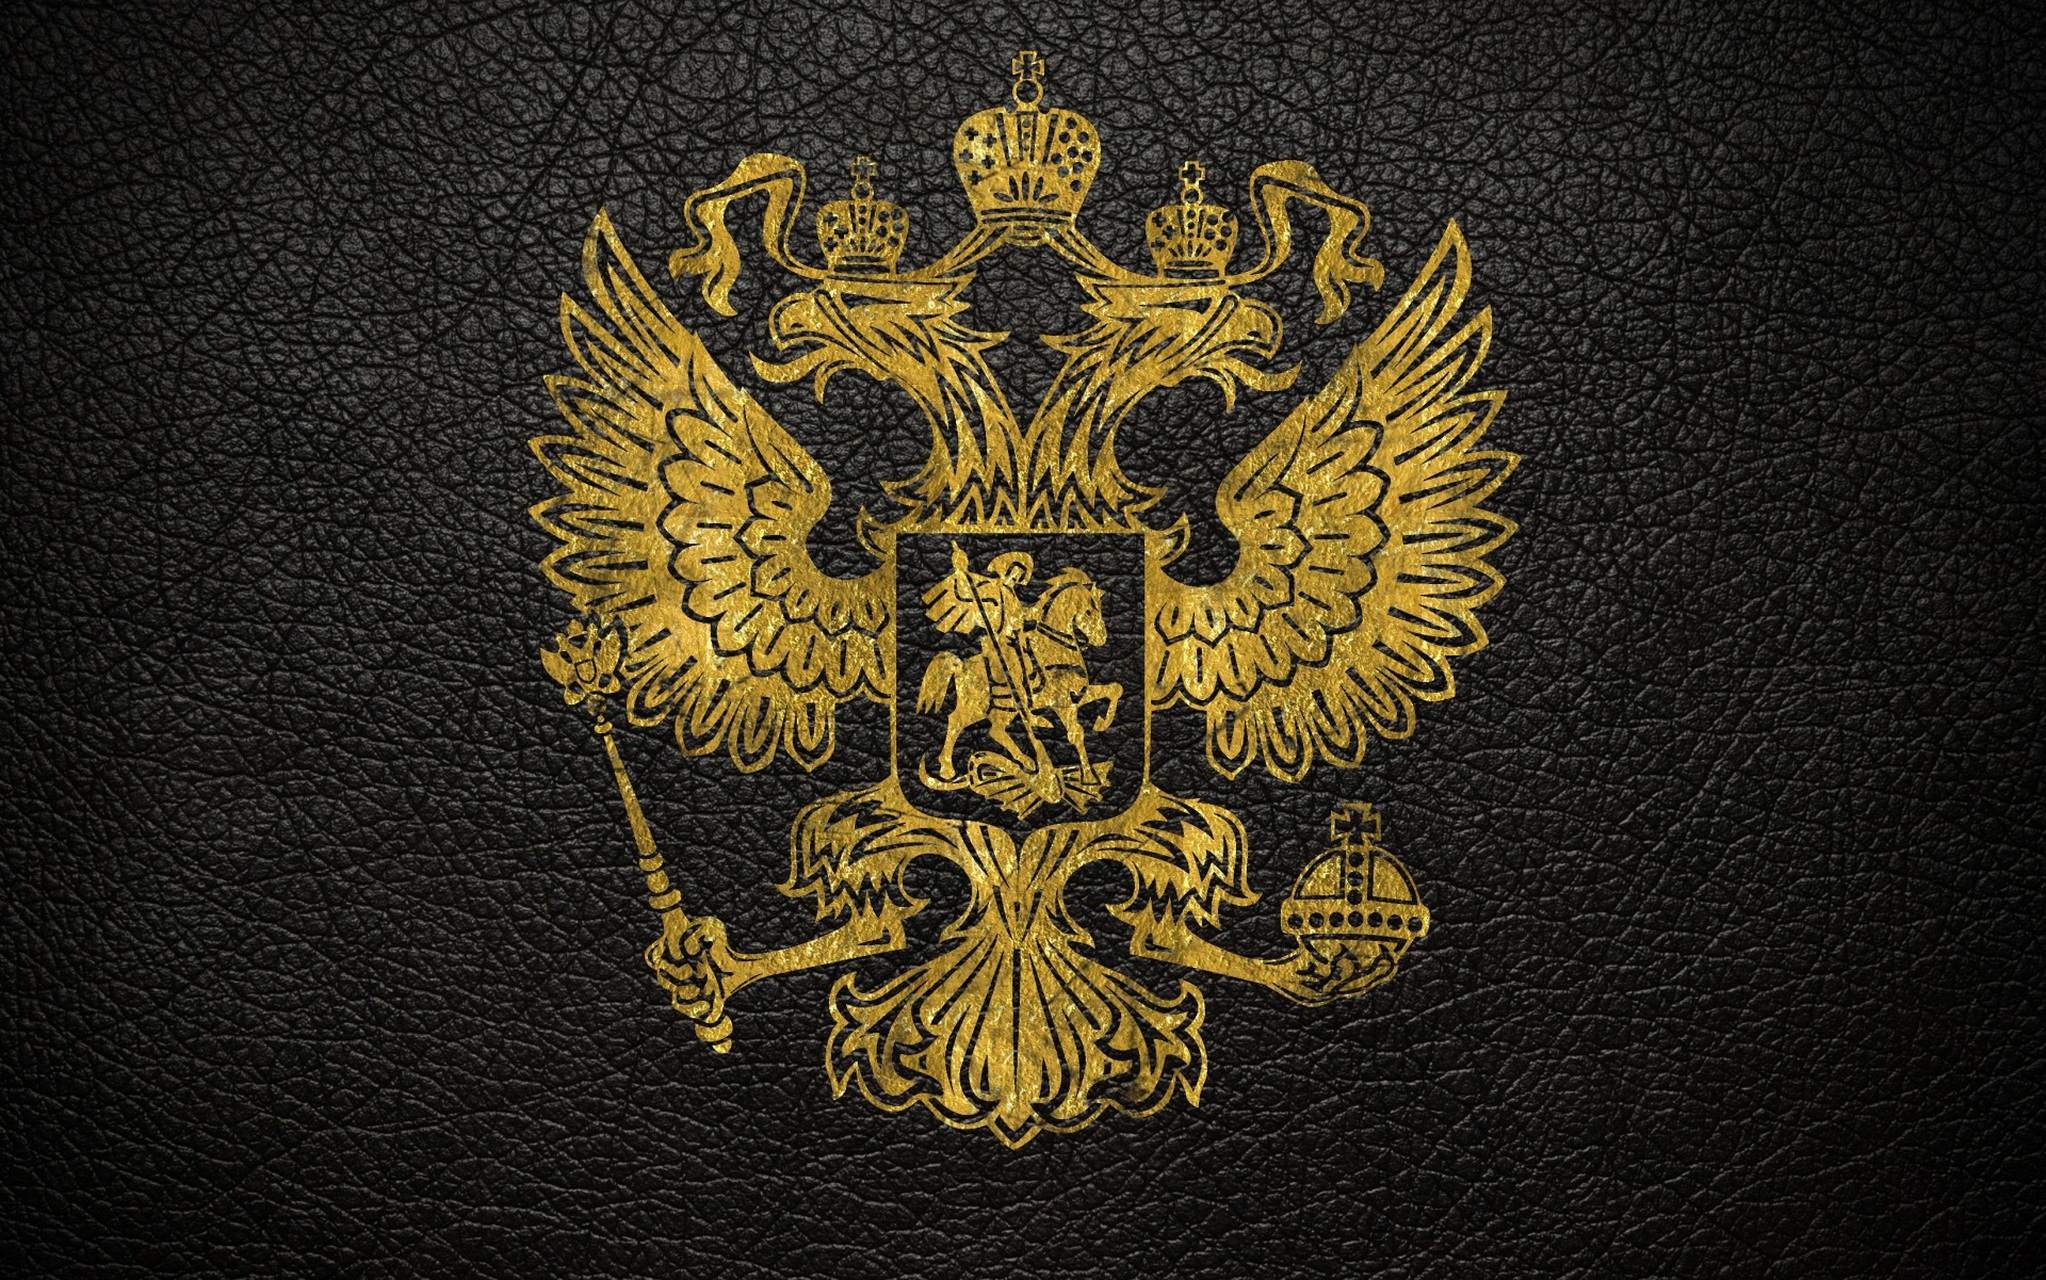 俄罗斯的国徽是双头鹰,既指地跨欧亚,也指欧亚两边看